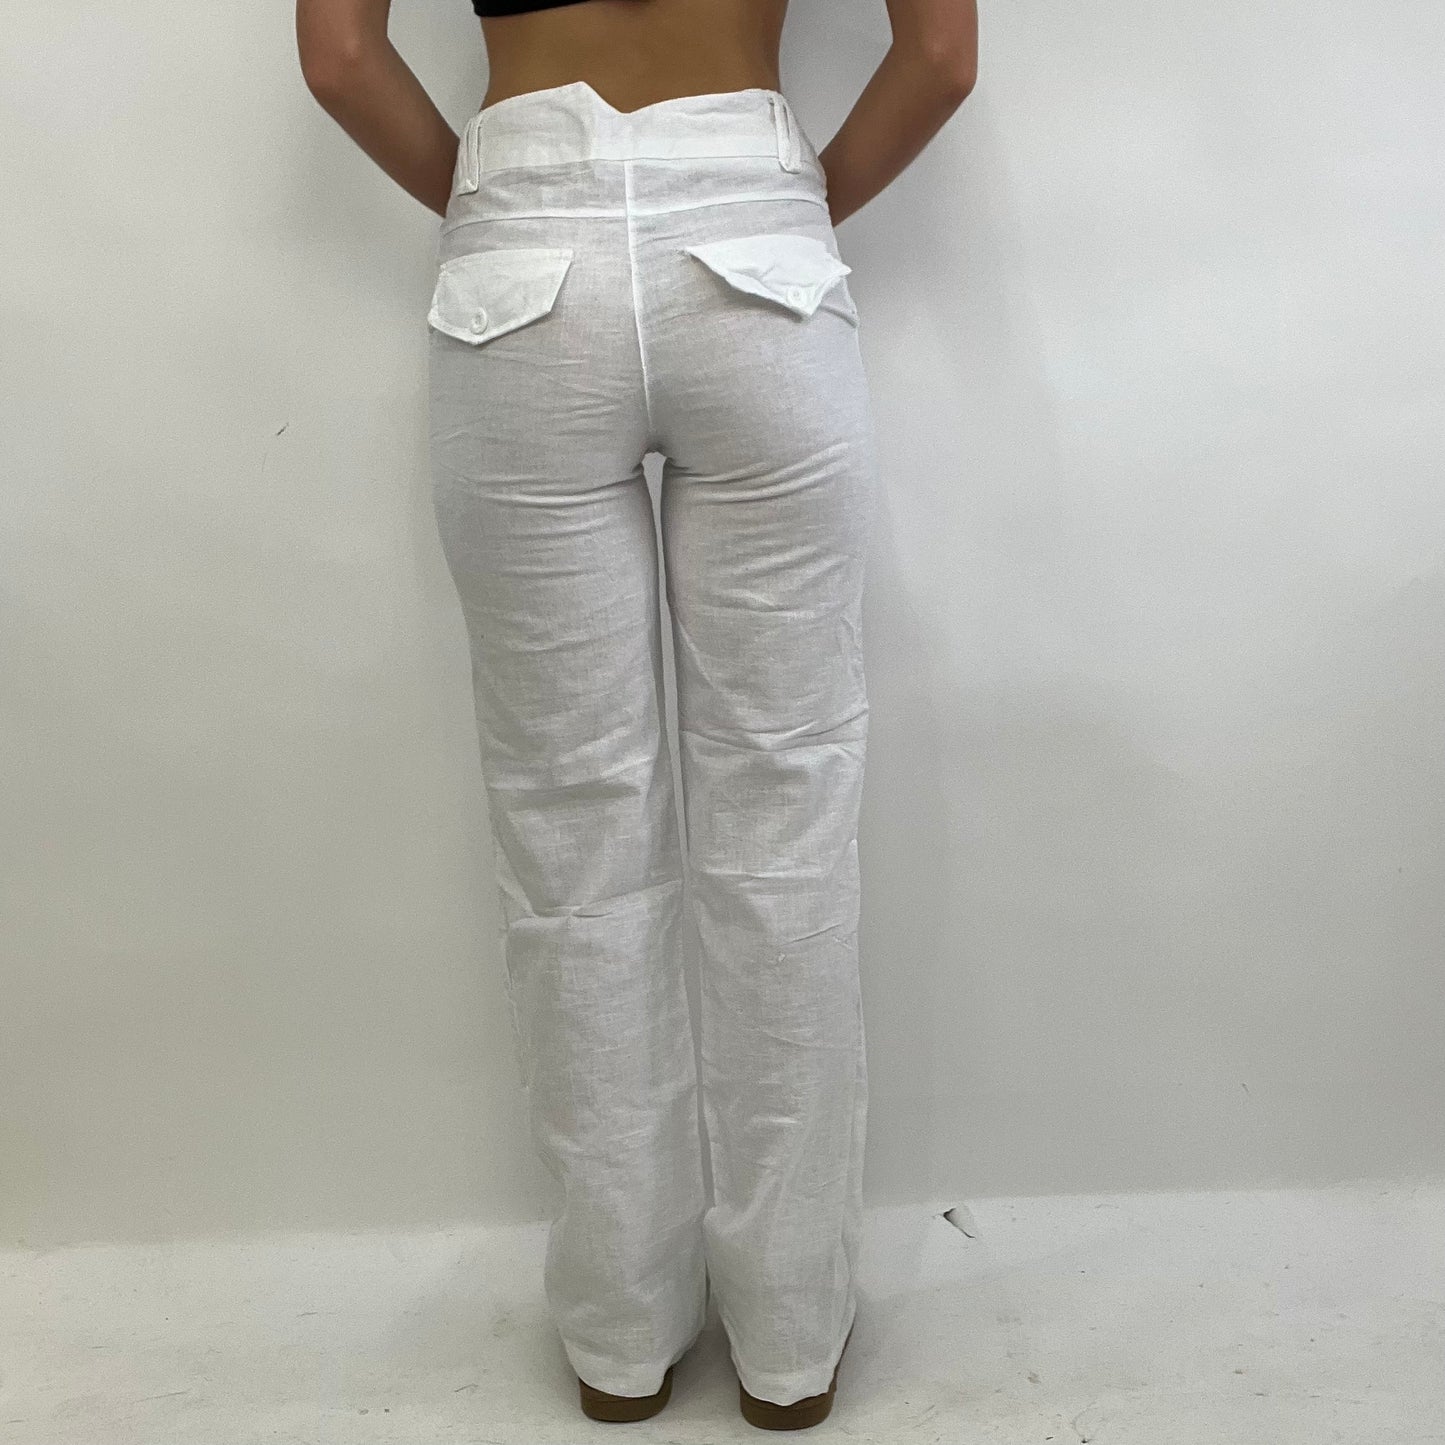 COASTAL GRANDMA DROP | XS white linen trousers